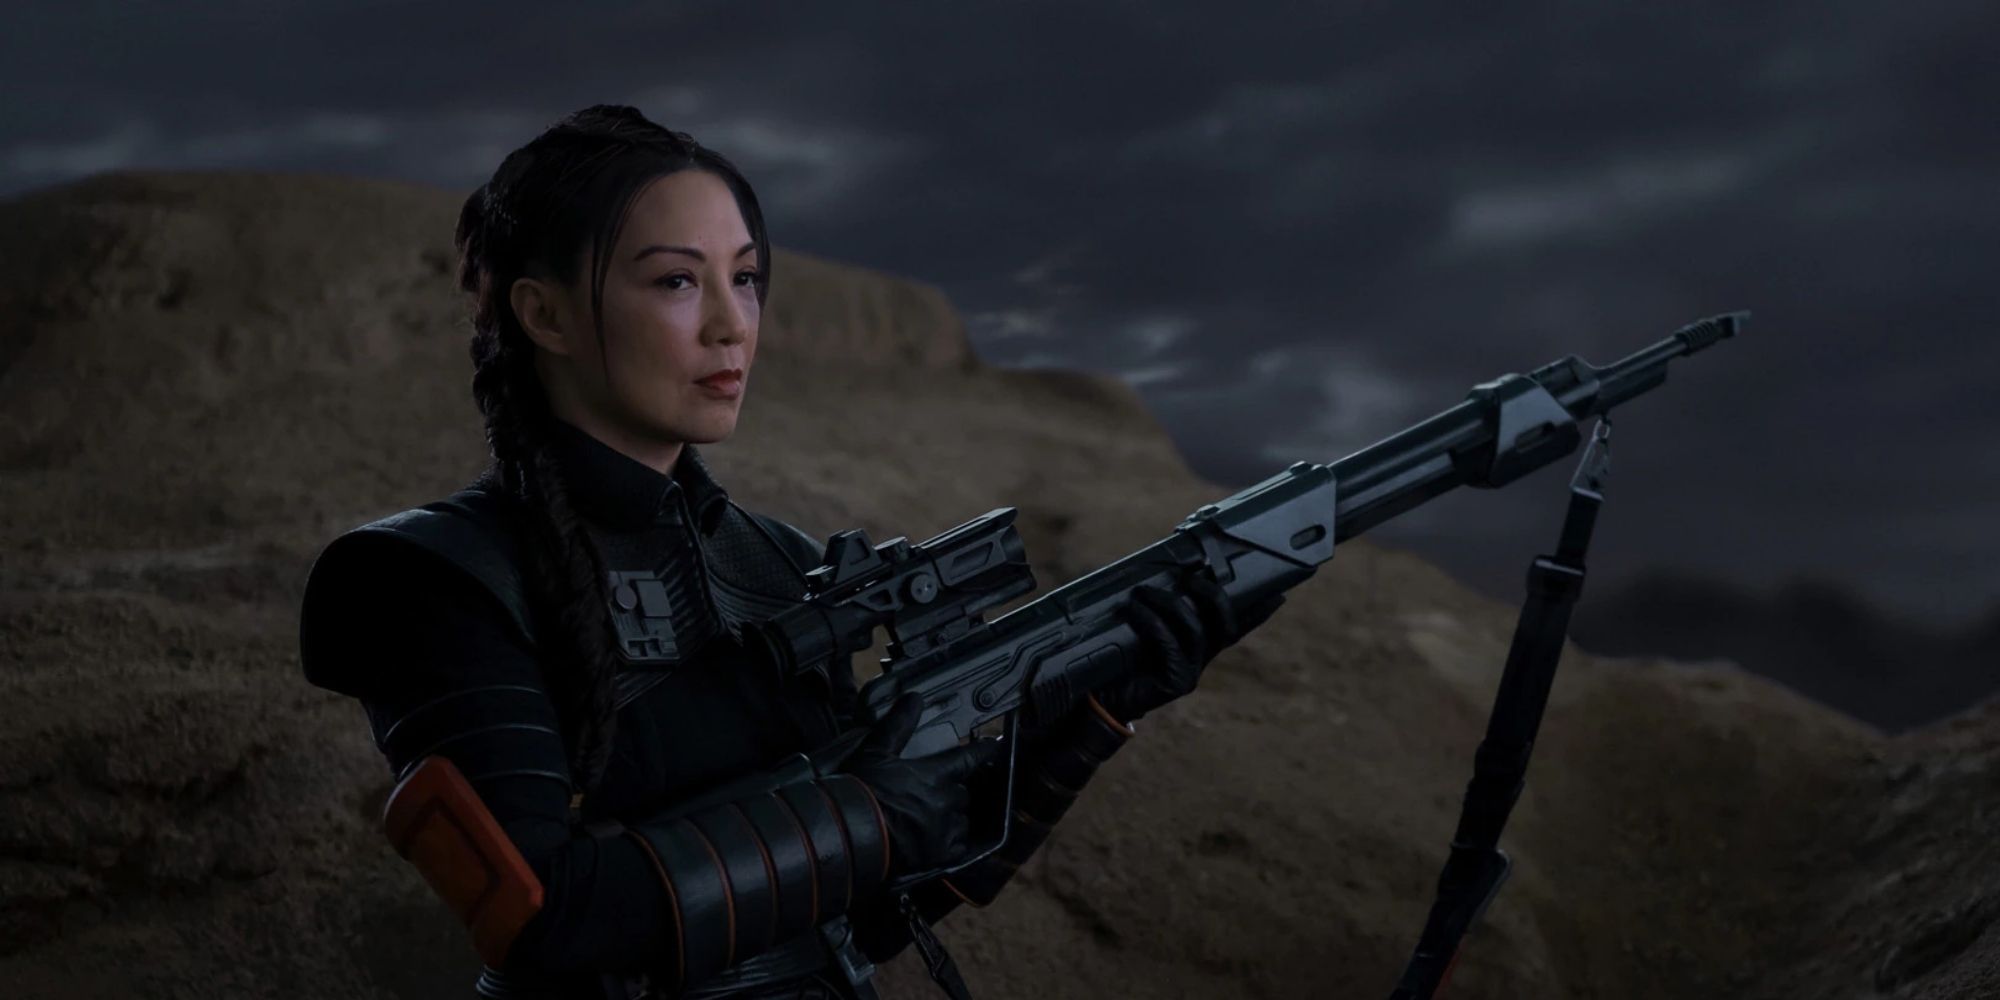 Изображение Феннек Шанд из телешоу «Мандалорец» со снайперской винтовкой.